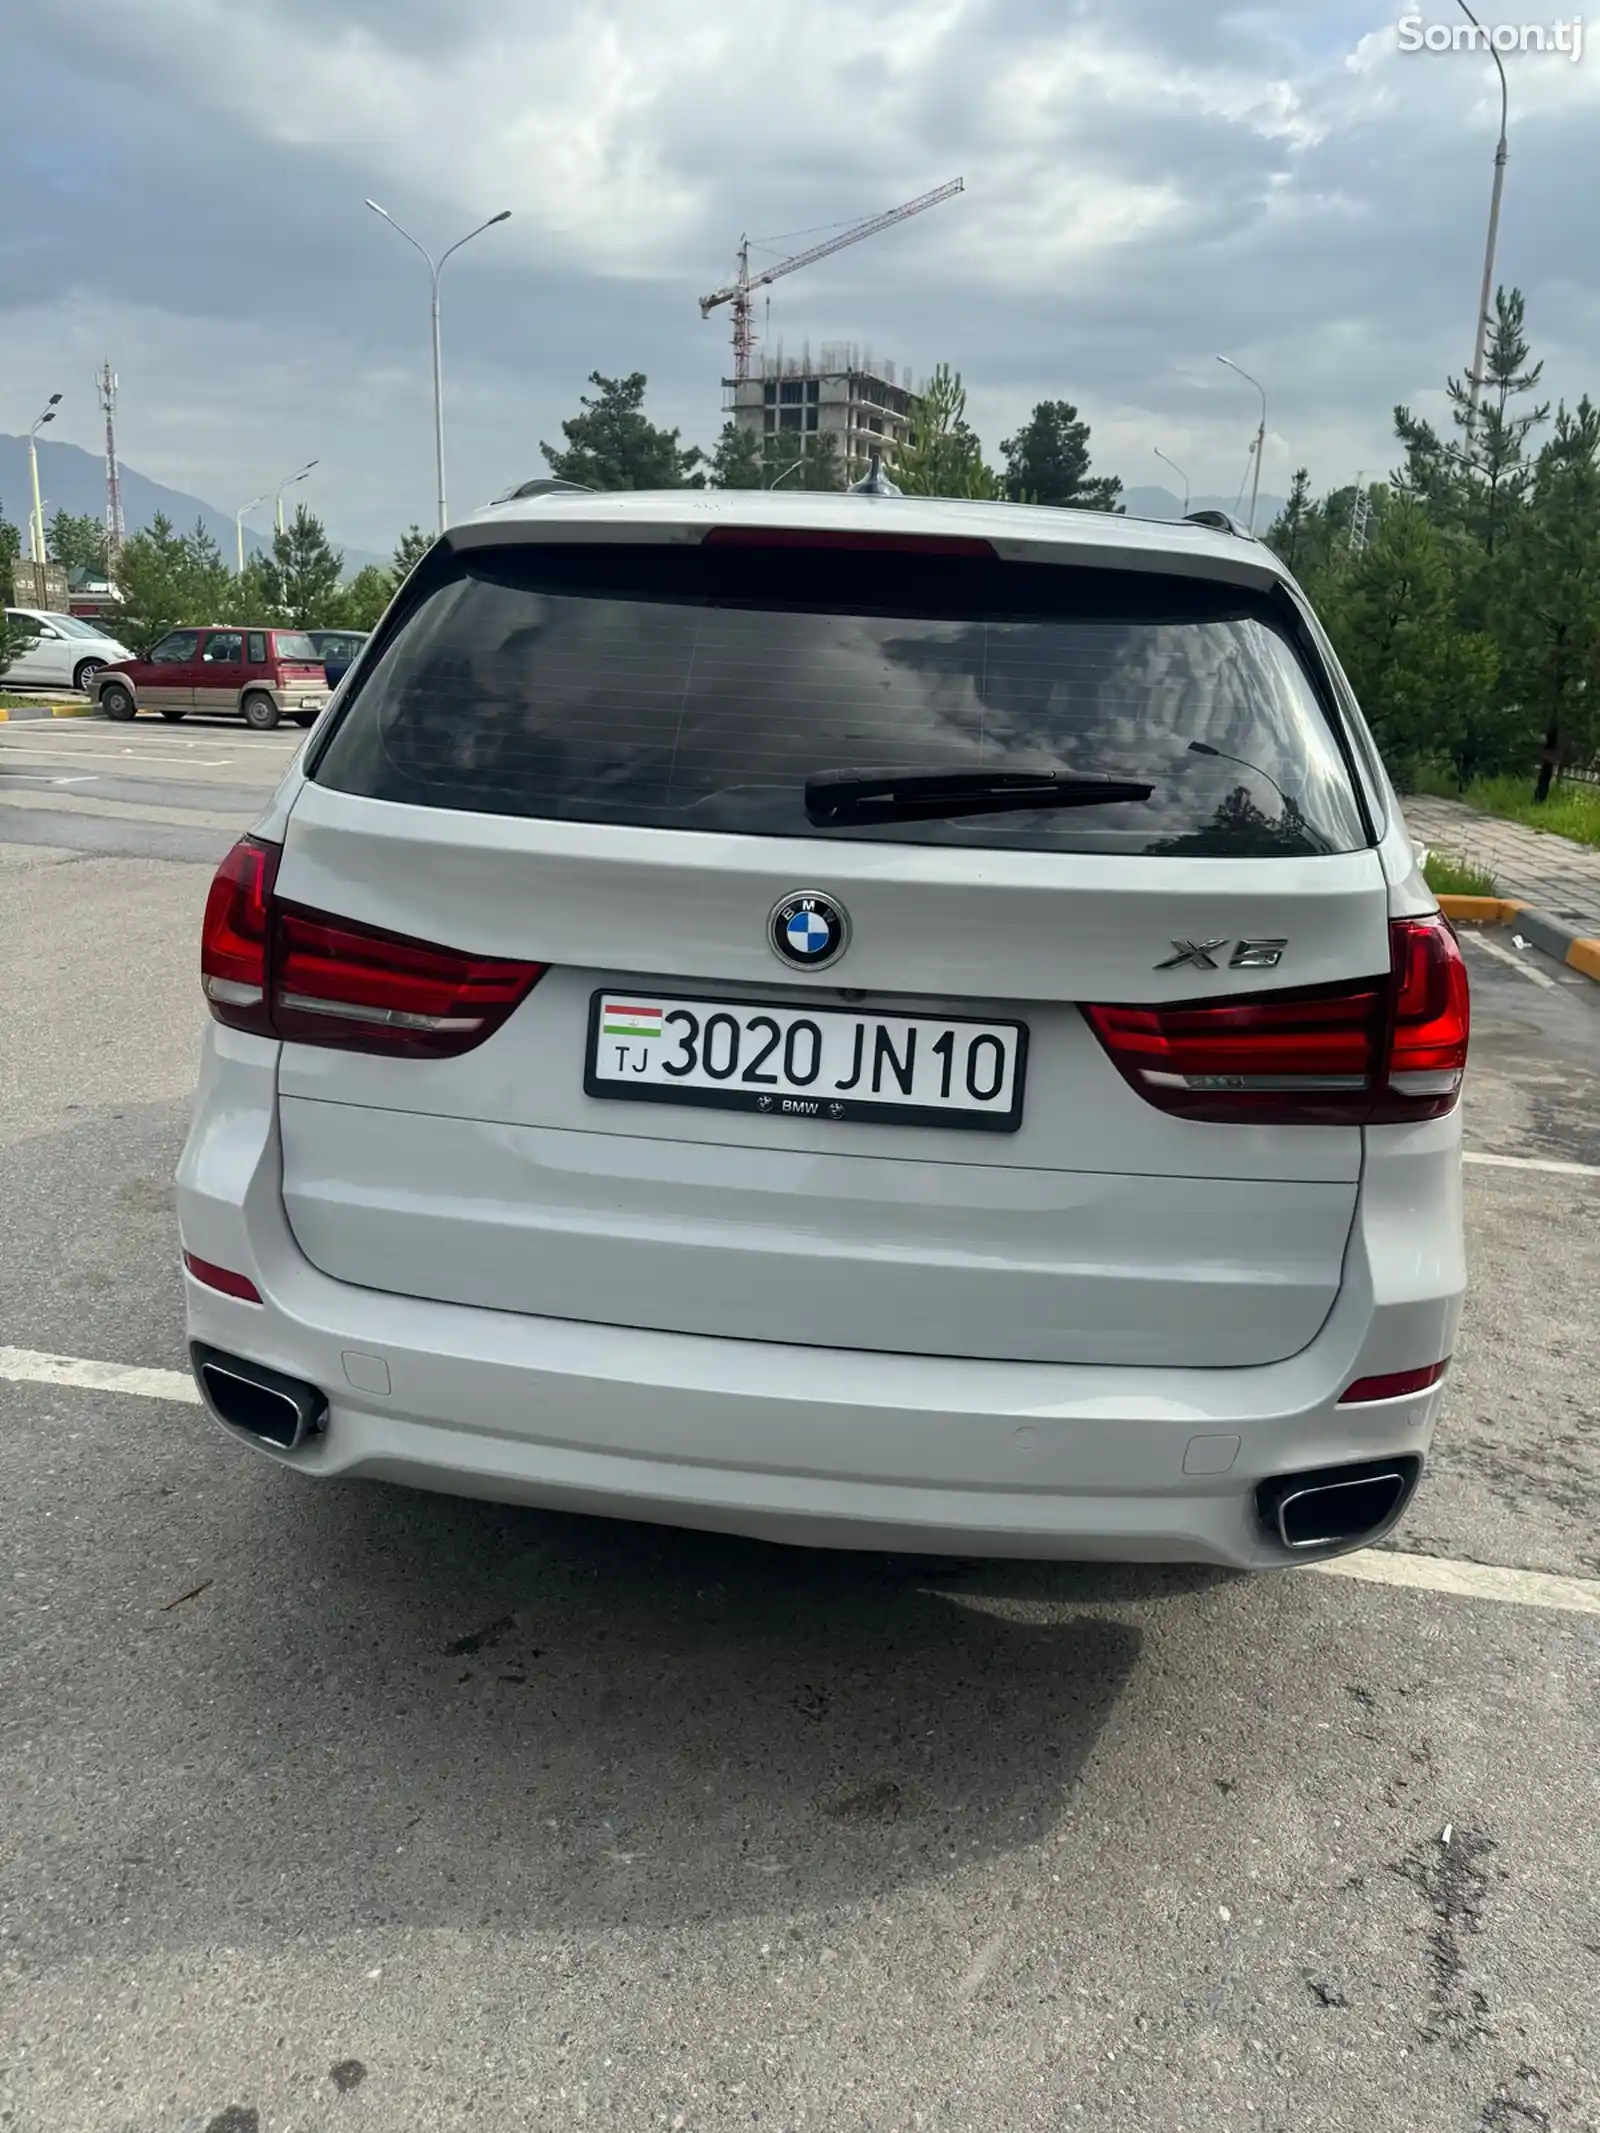 BMW X5, 2017-2